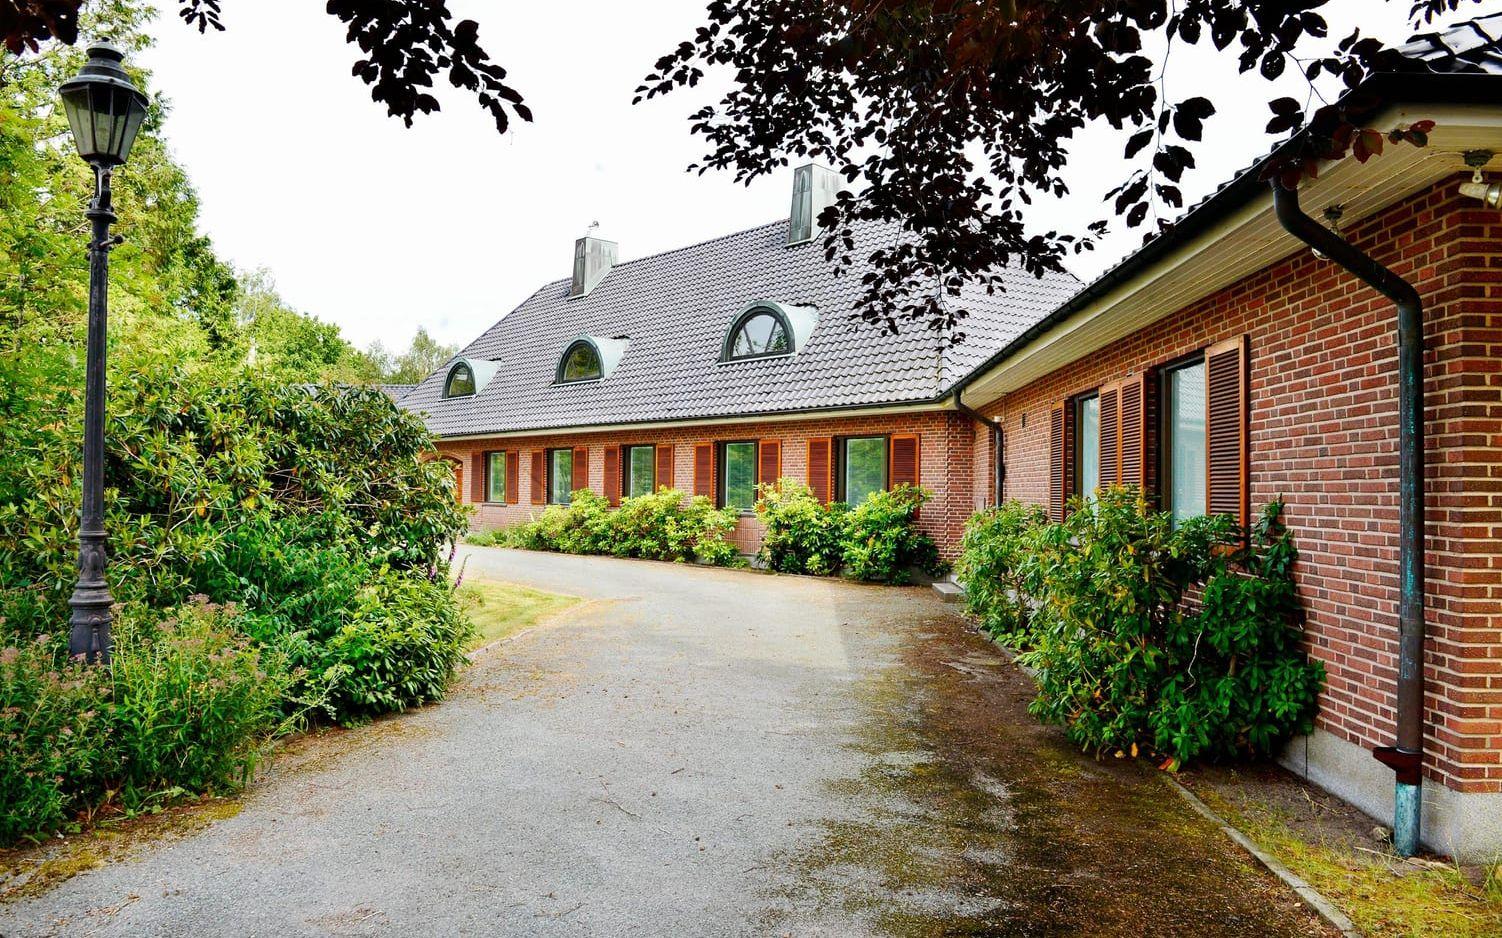 Villan är en av Falkenbergs dyraste villor historiskt.